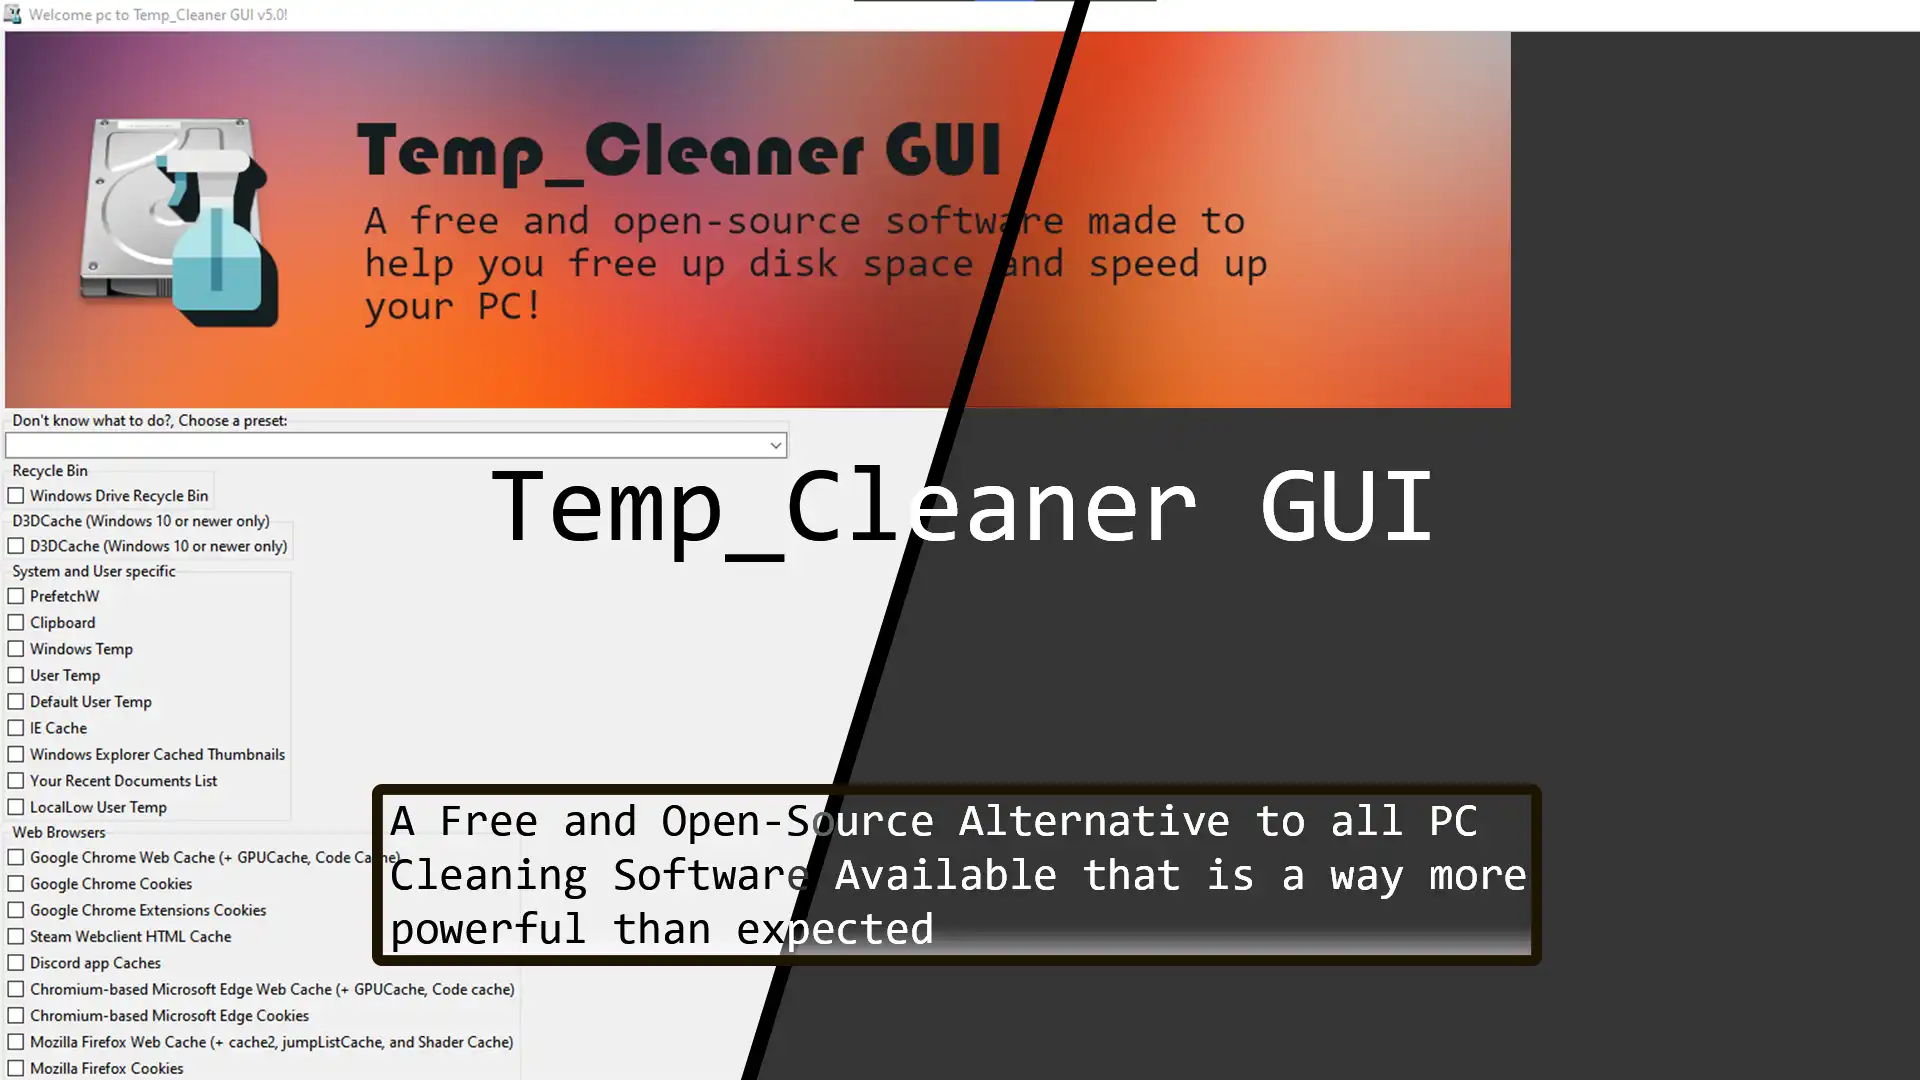 ابزار وب یا برنامه وب Temp_Cleaner را دانلود کنید